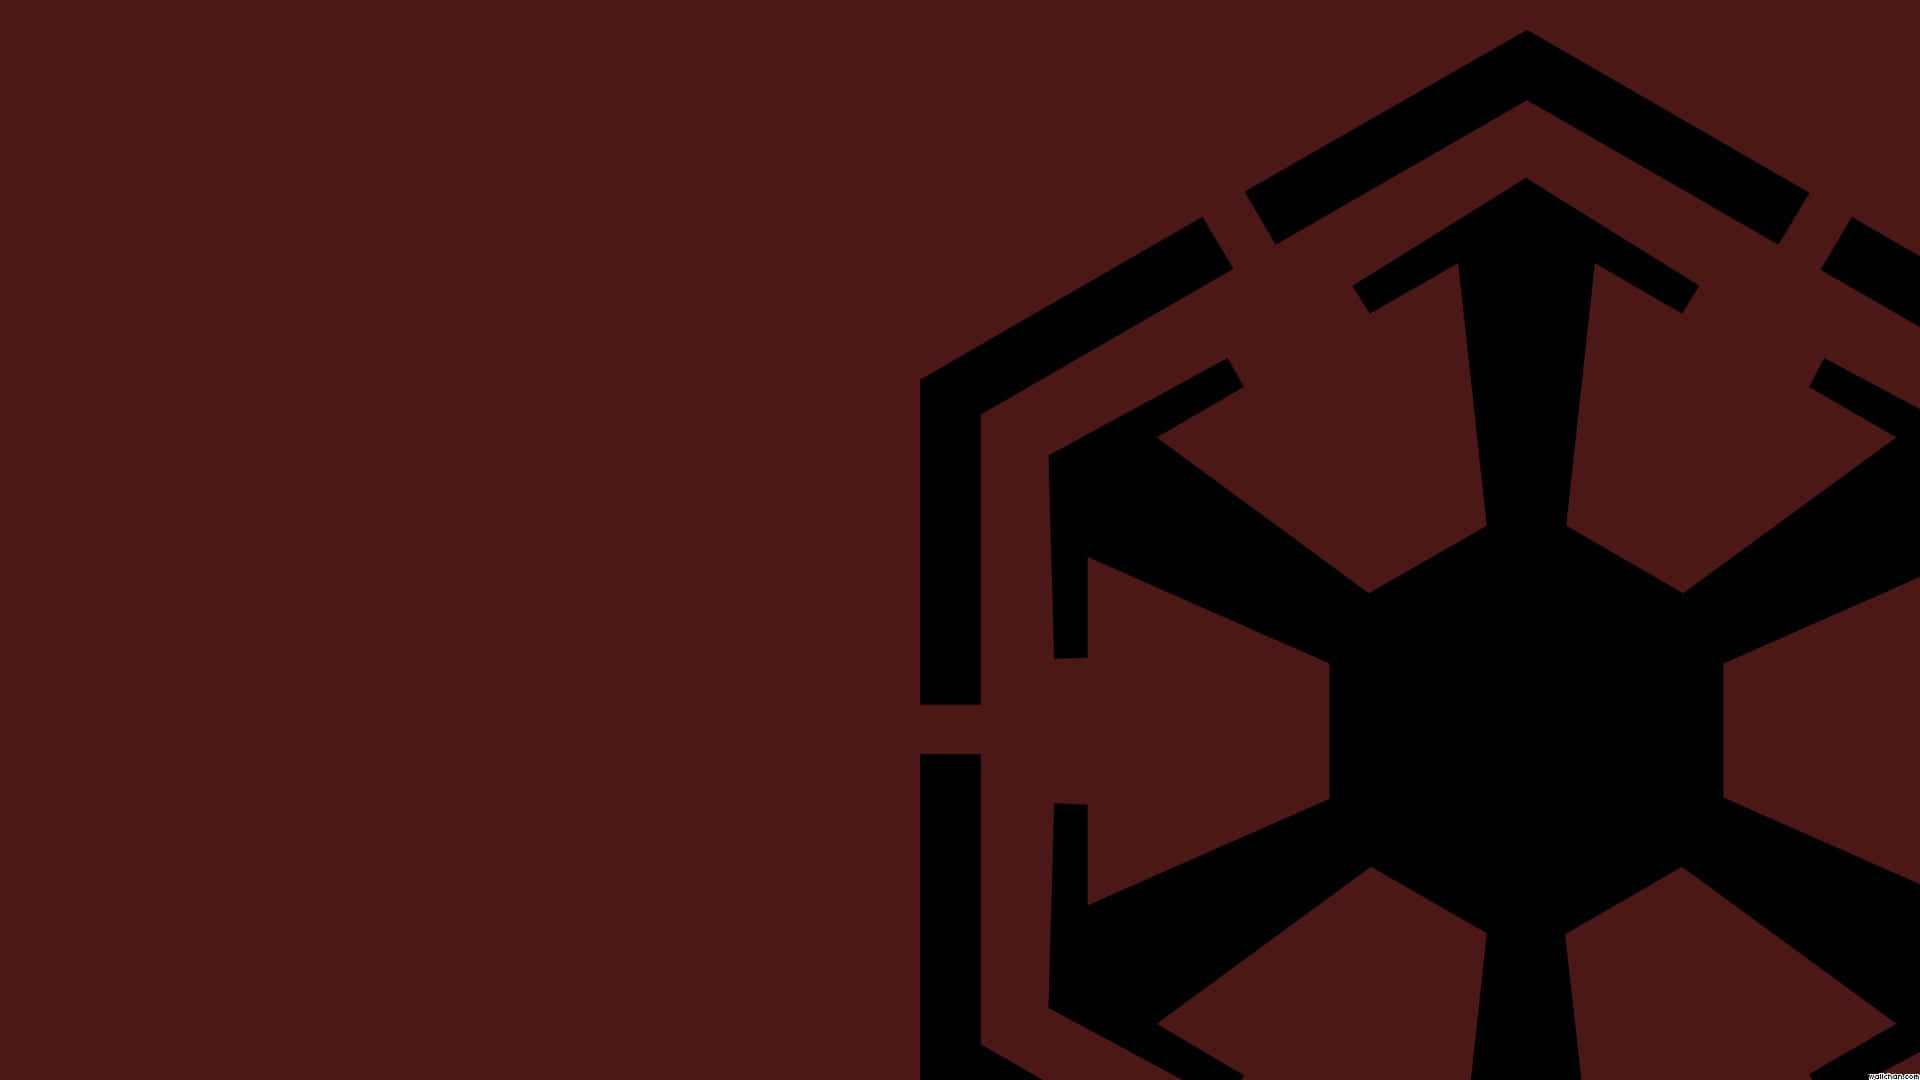 Starwars-logo Des Imperiums Auf Rotem Hintergrund. Wallpaper